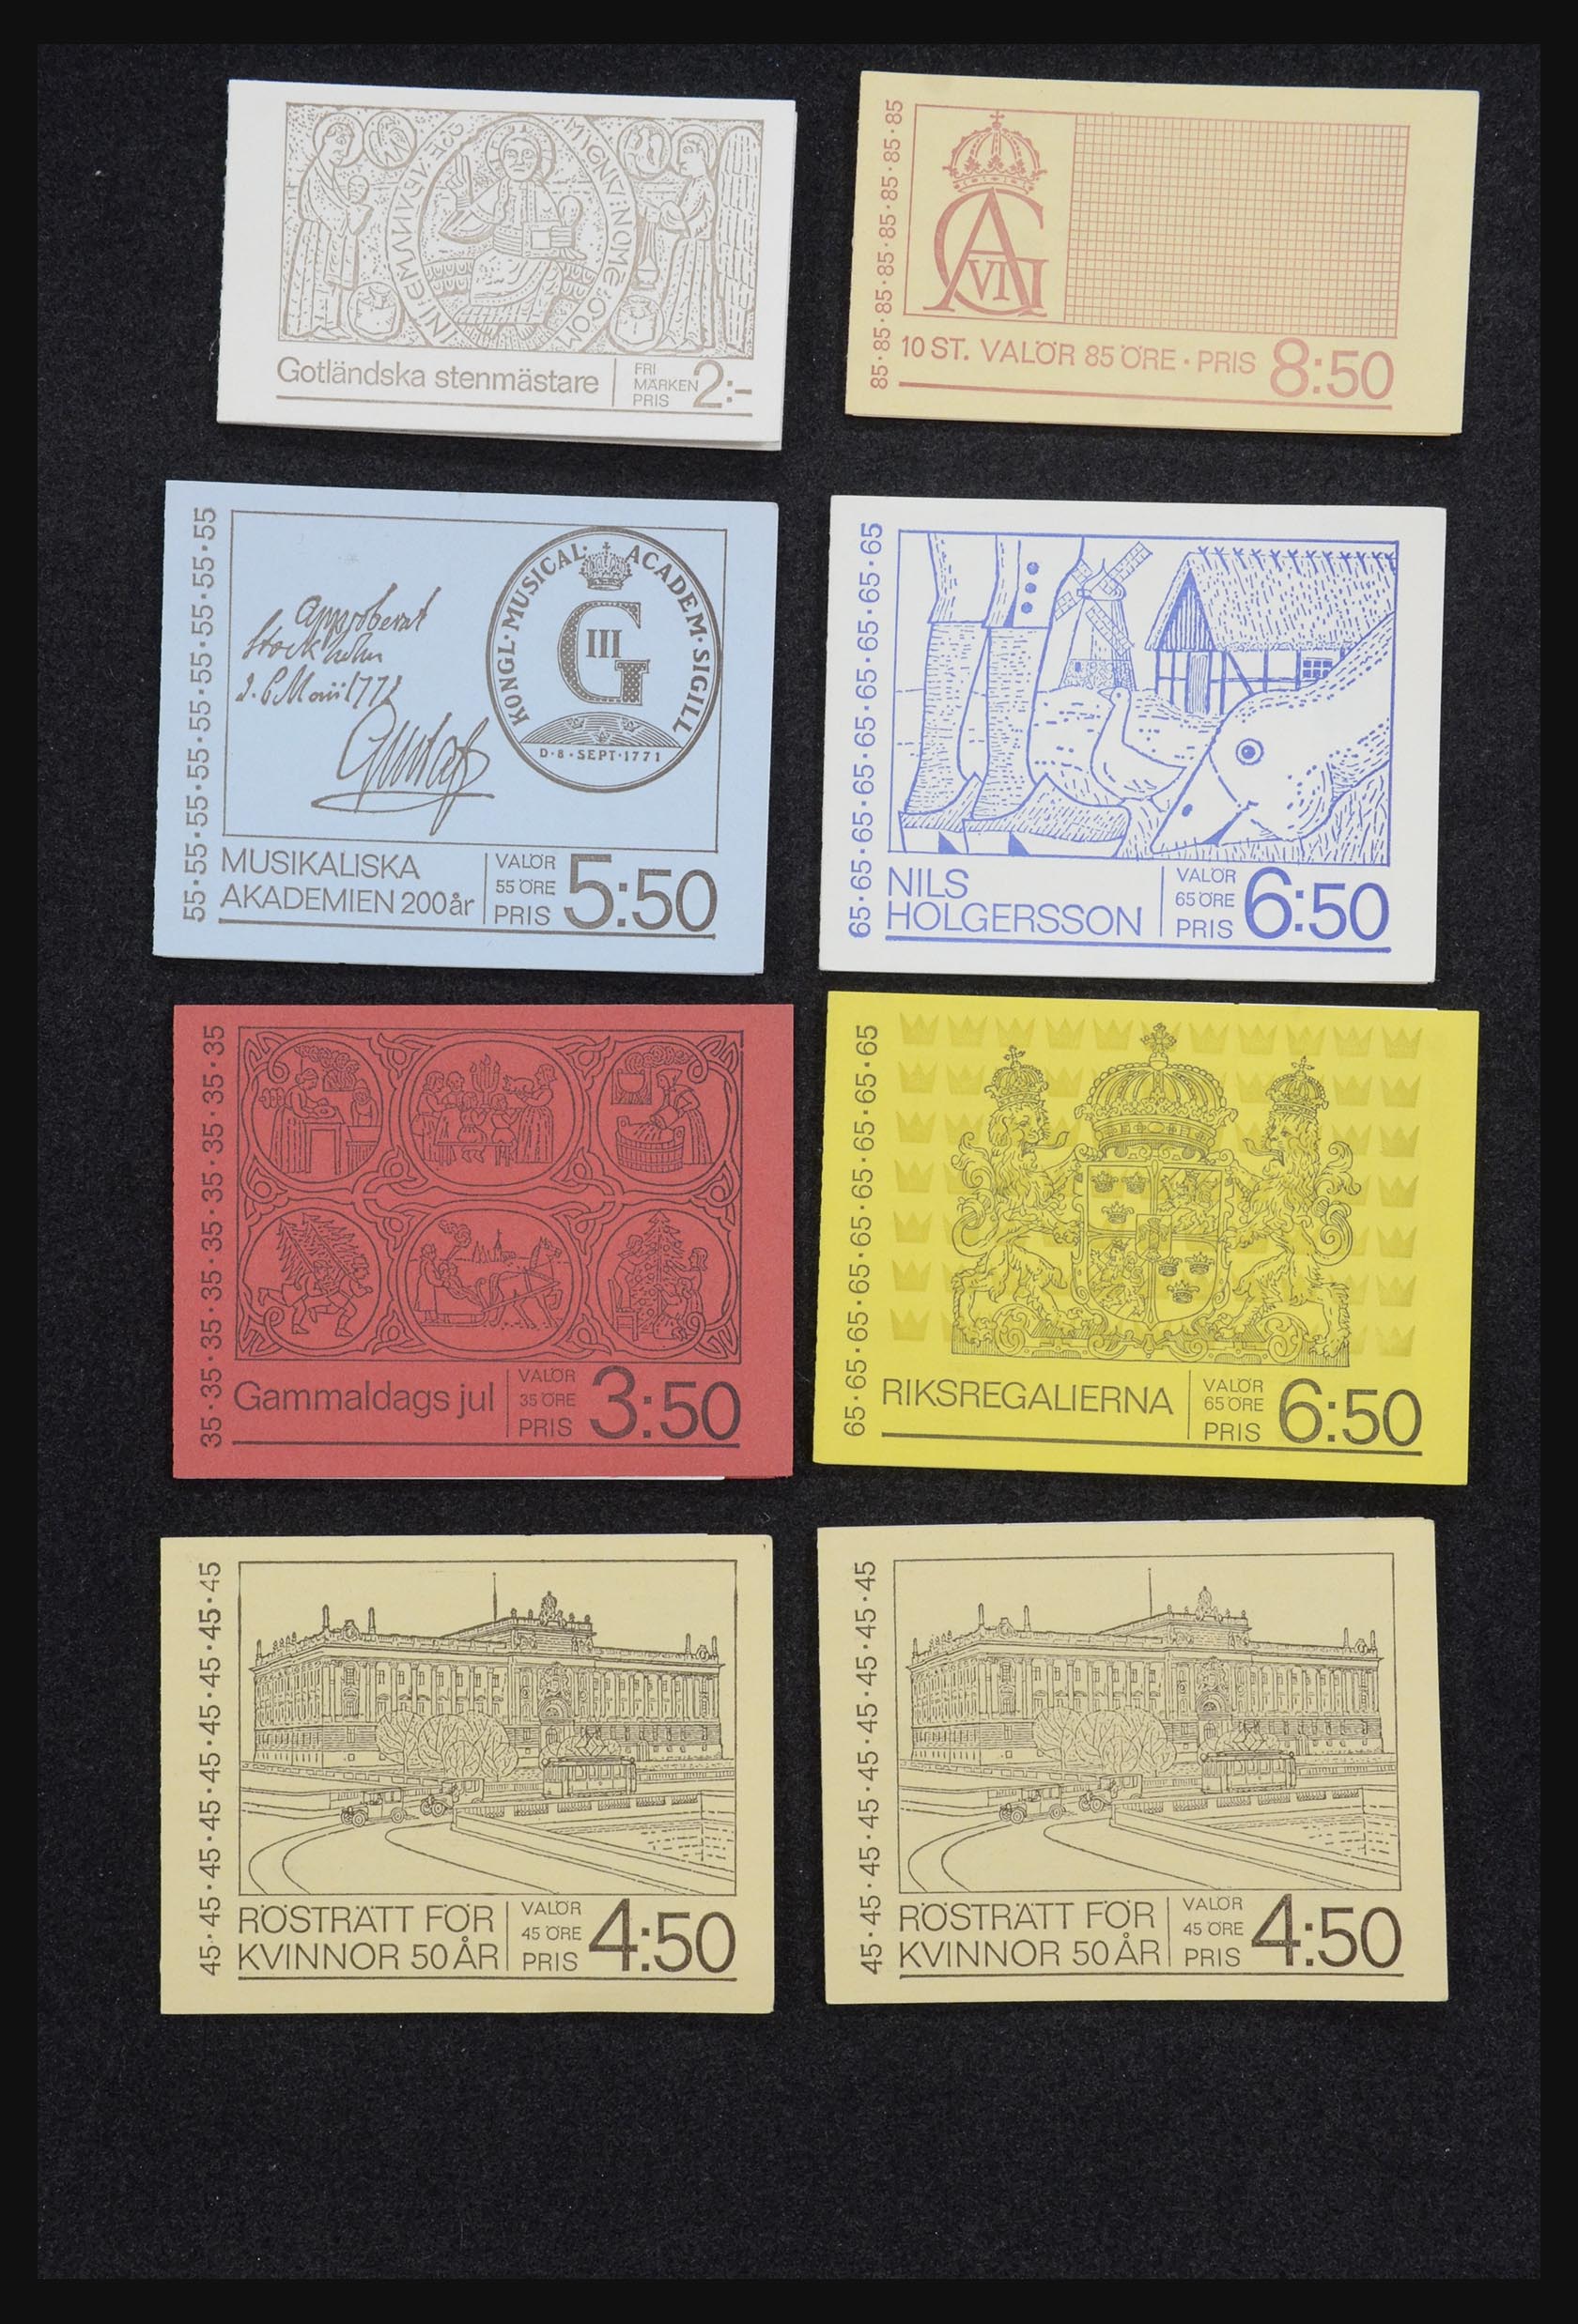 32026 019 - 32026 Sweden stampbooklets 1949-1990.